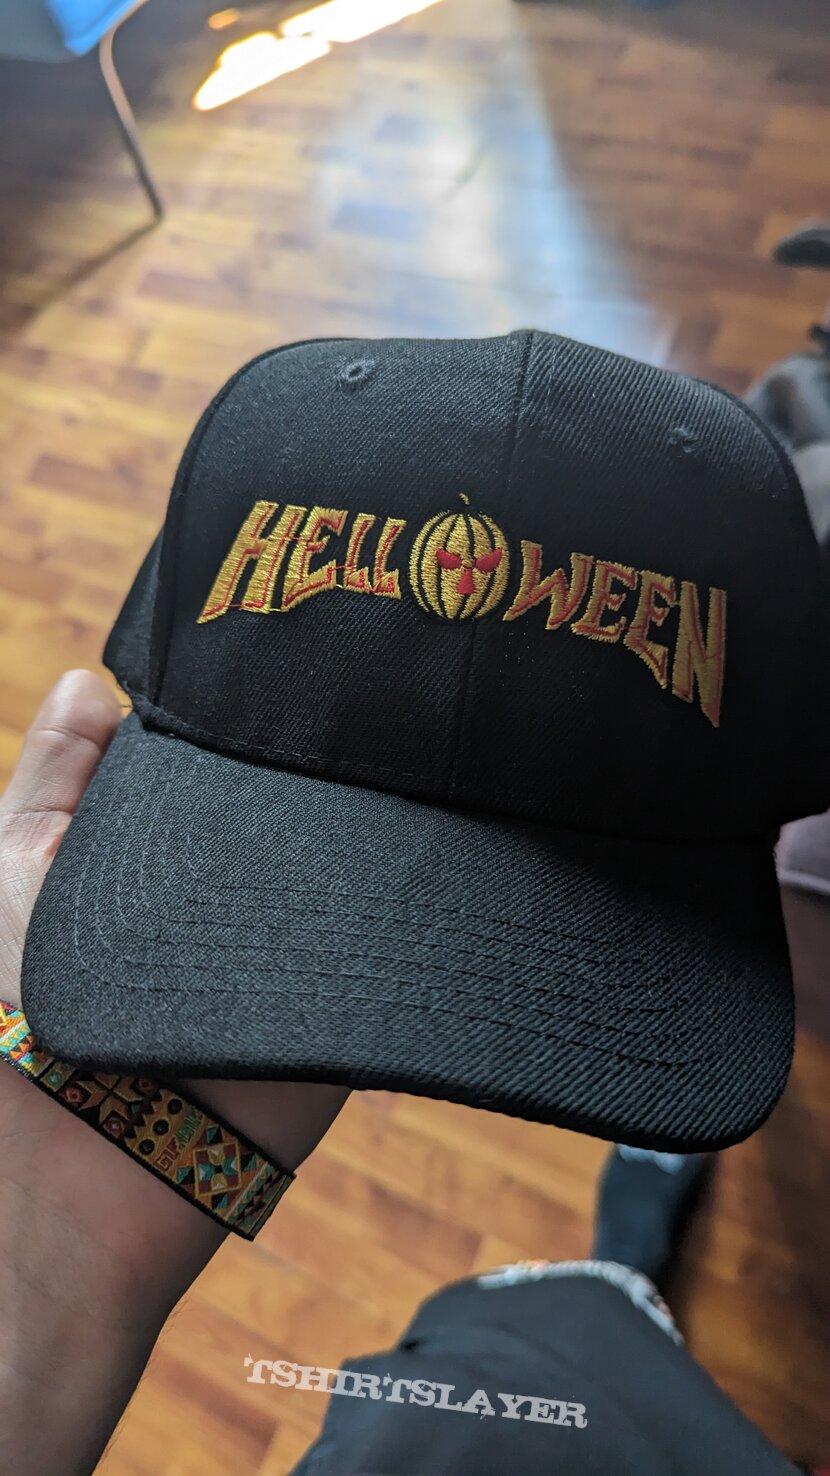 Helloween  hat